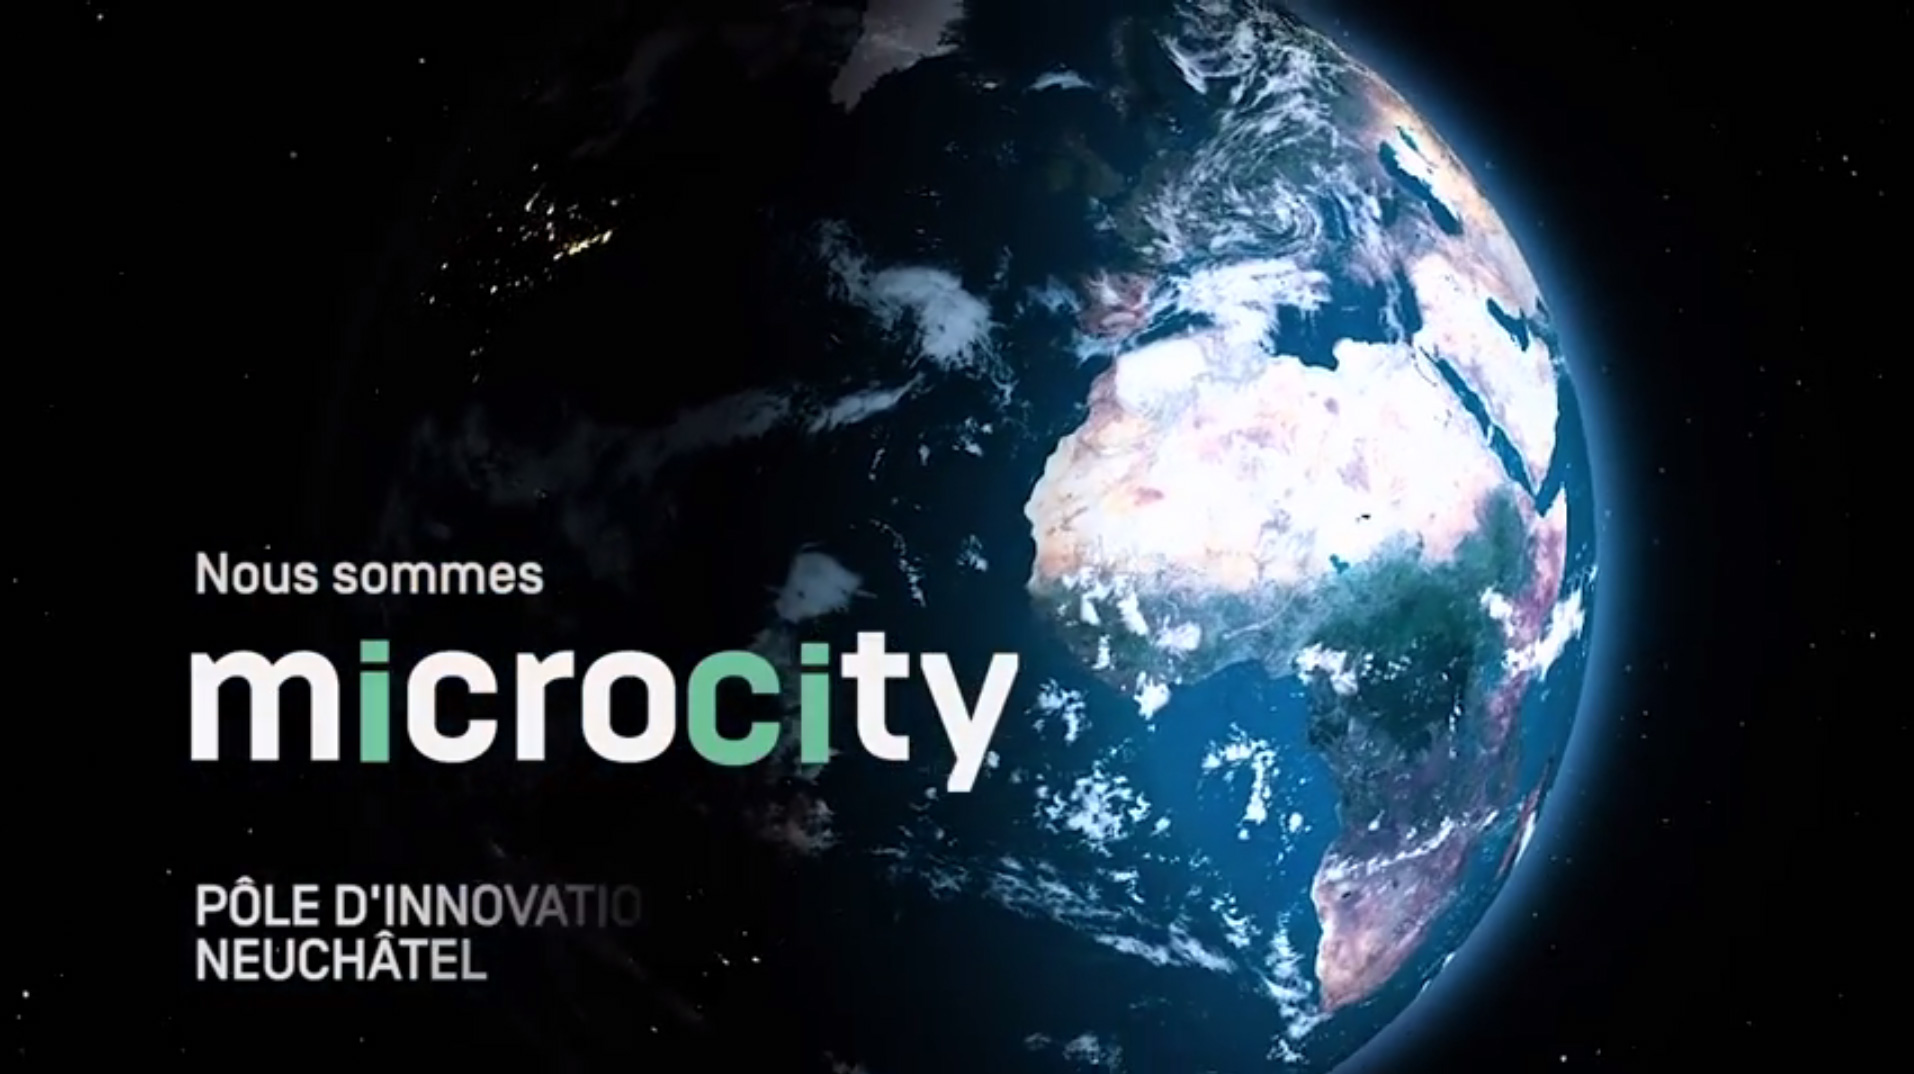 Le logo de Microcity, pole d'innovation neuchâtelois